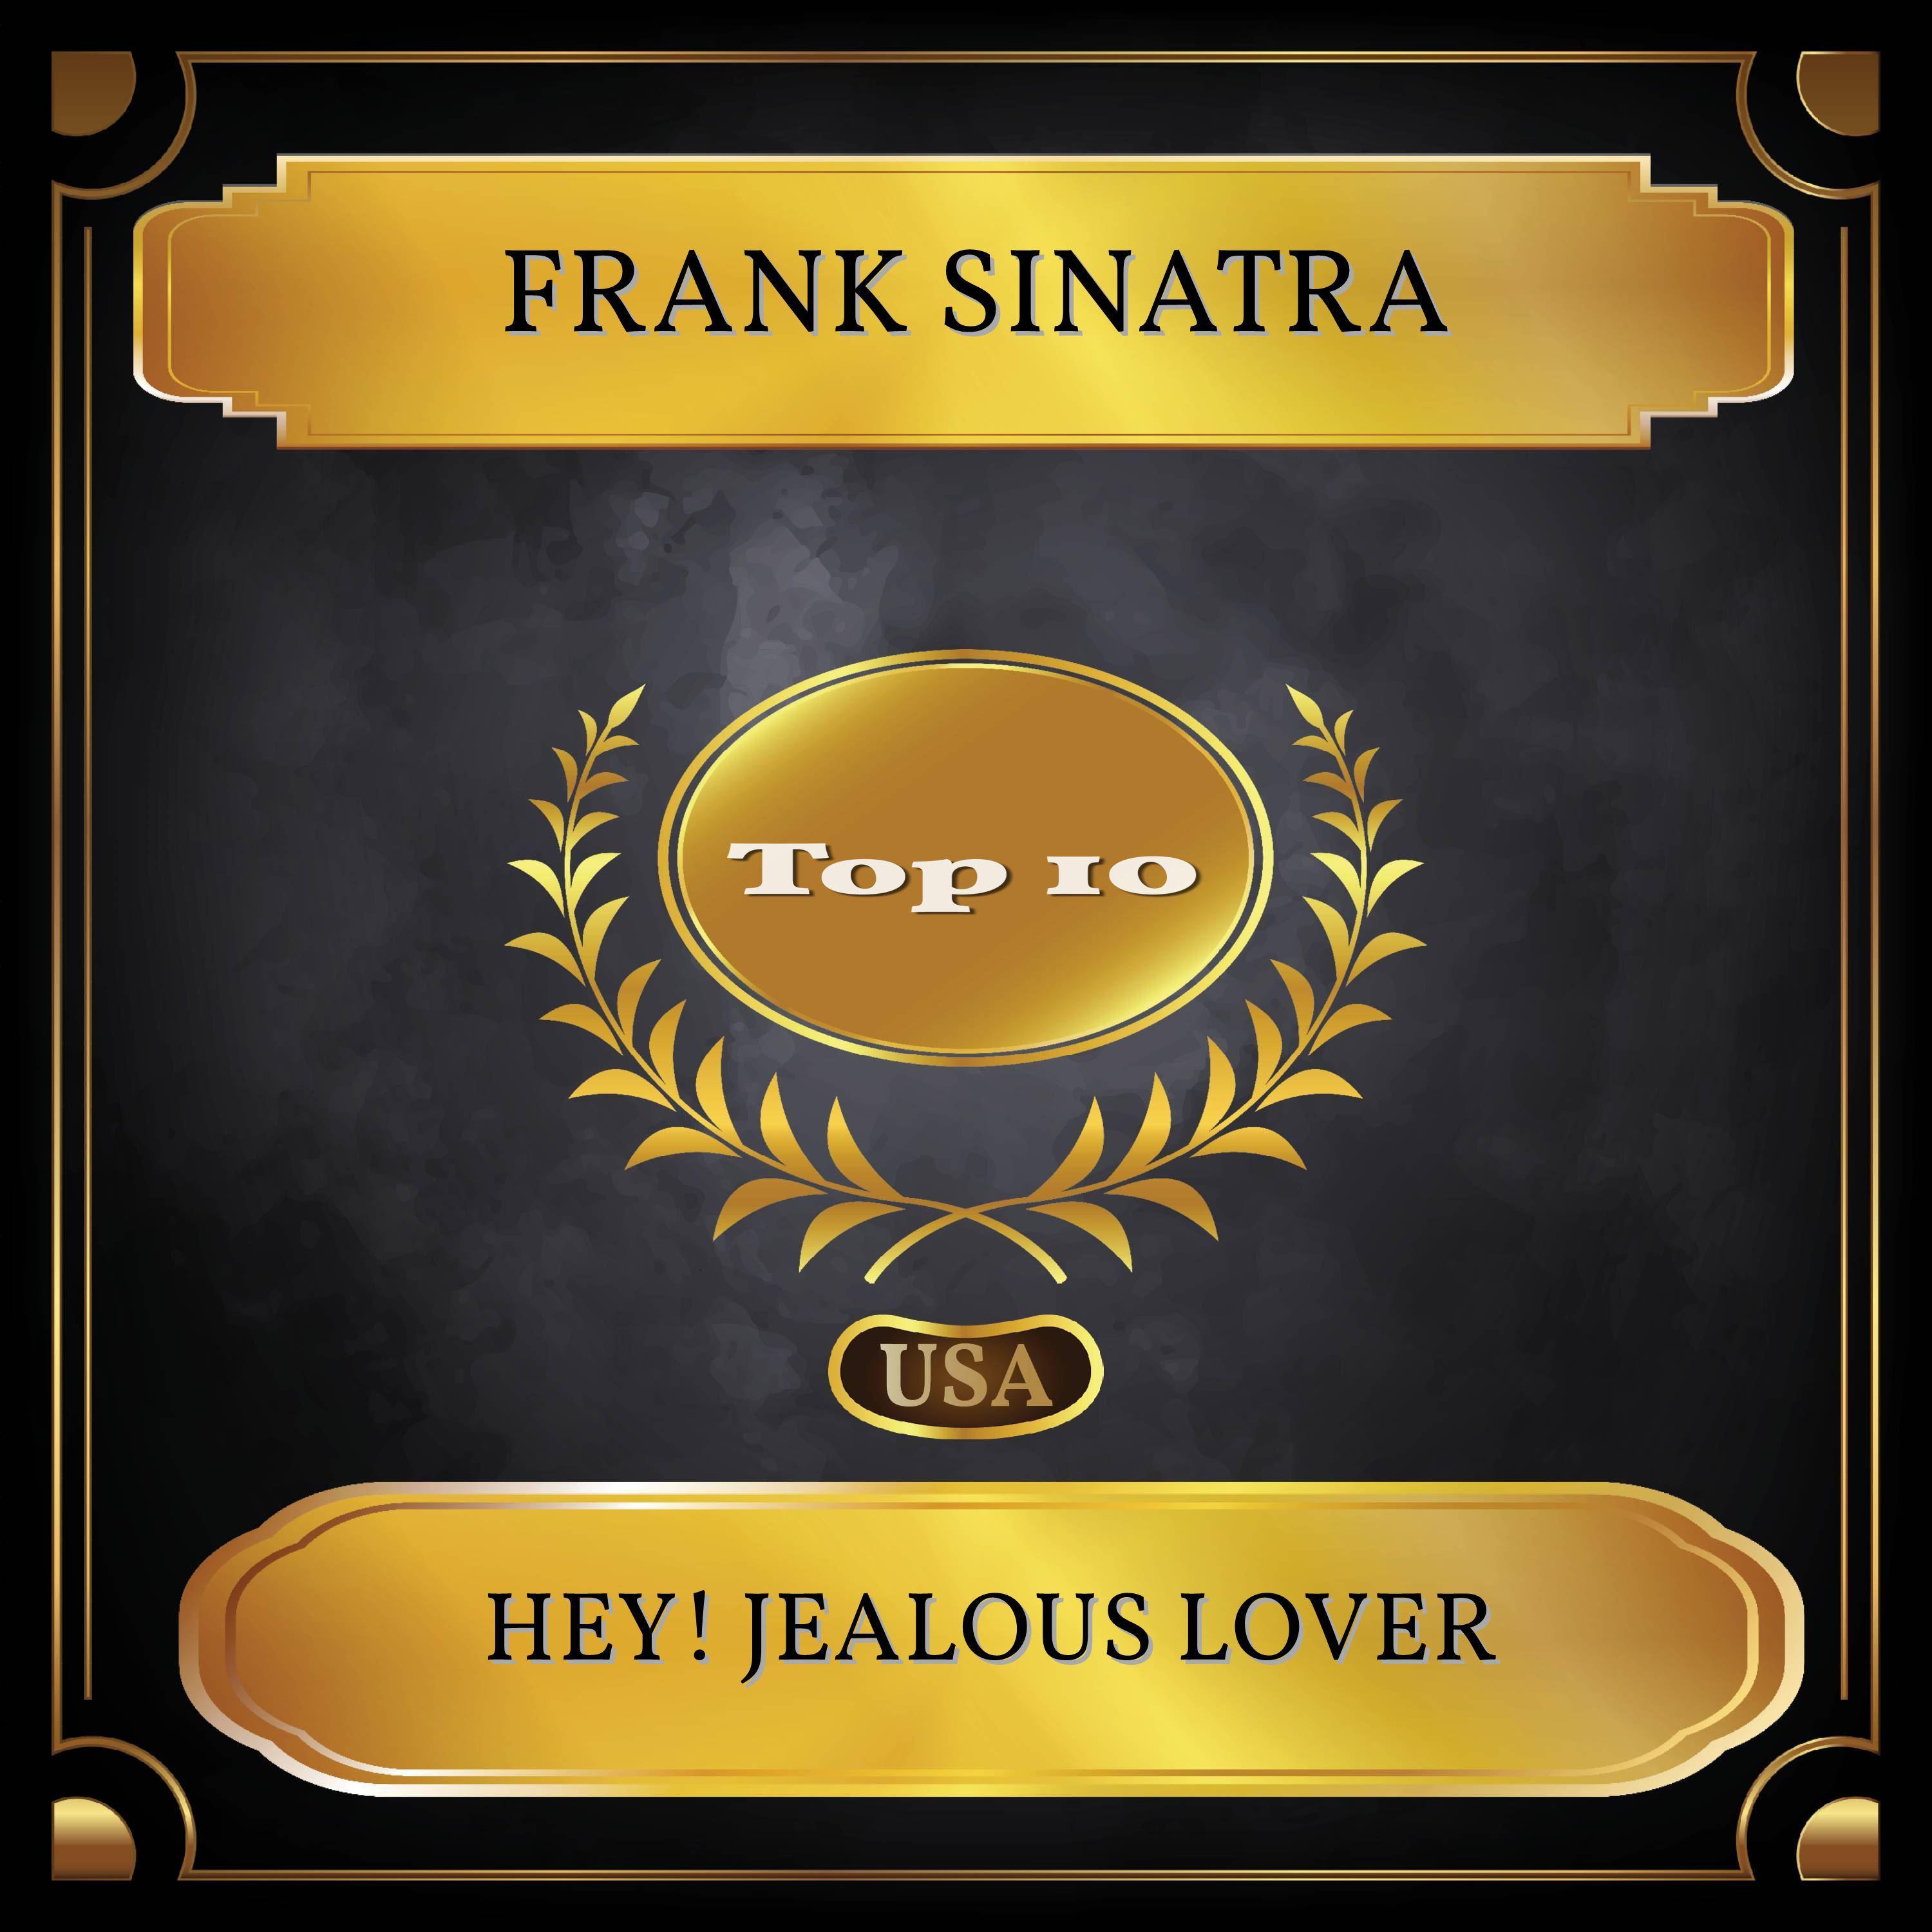 Hey! Jealous Lover (Billboard Hot 100 - No. 03)